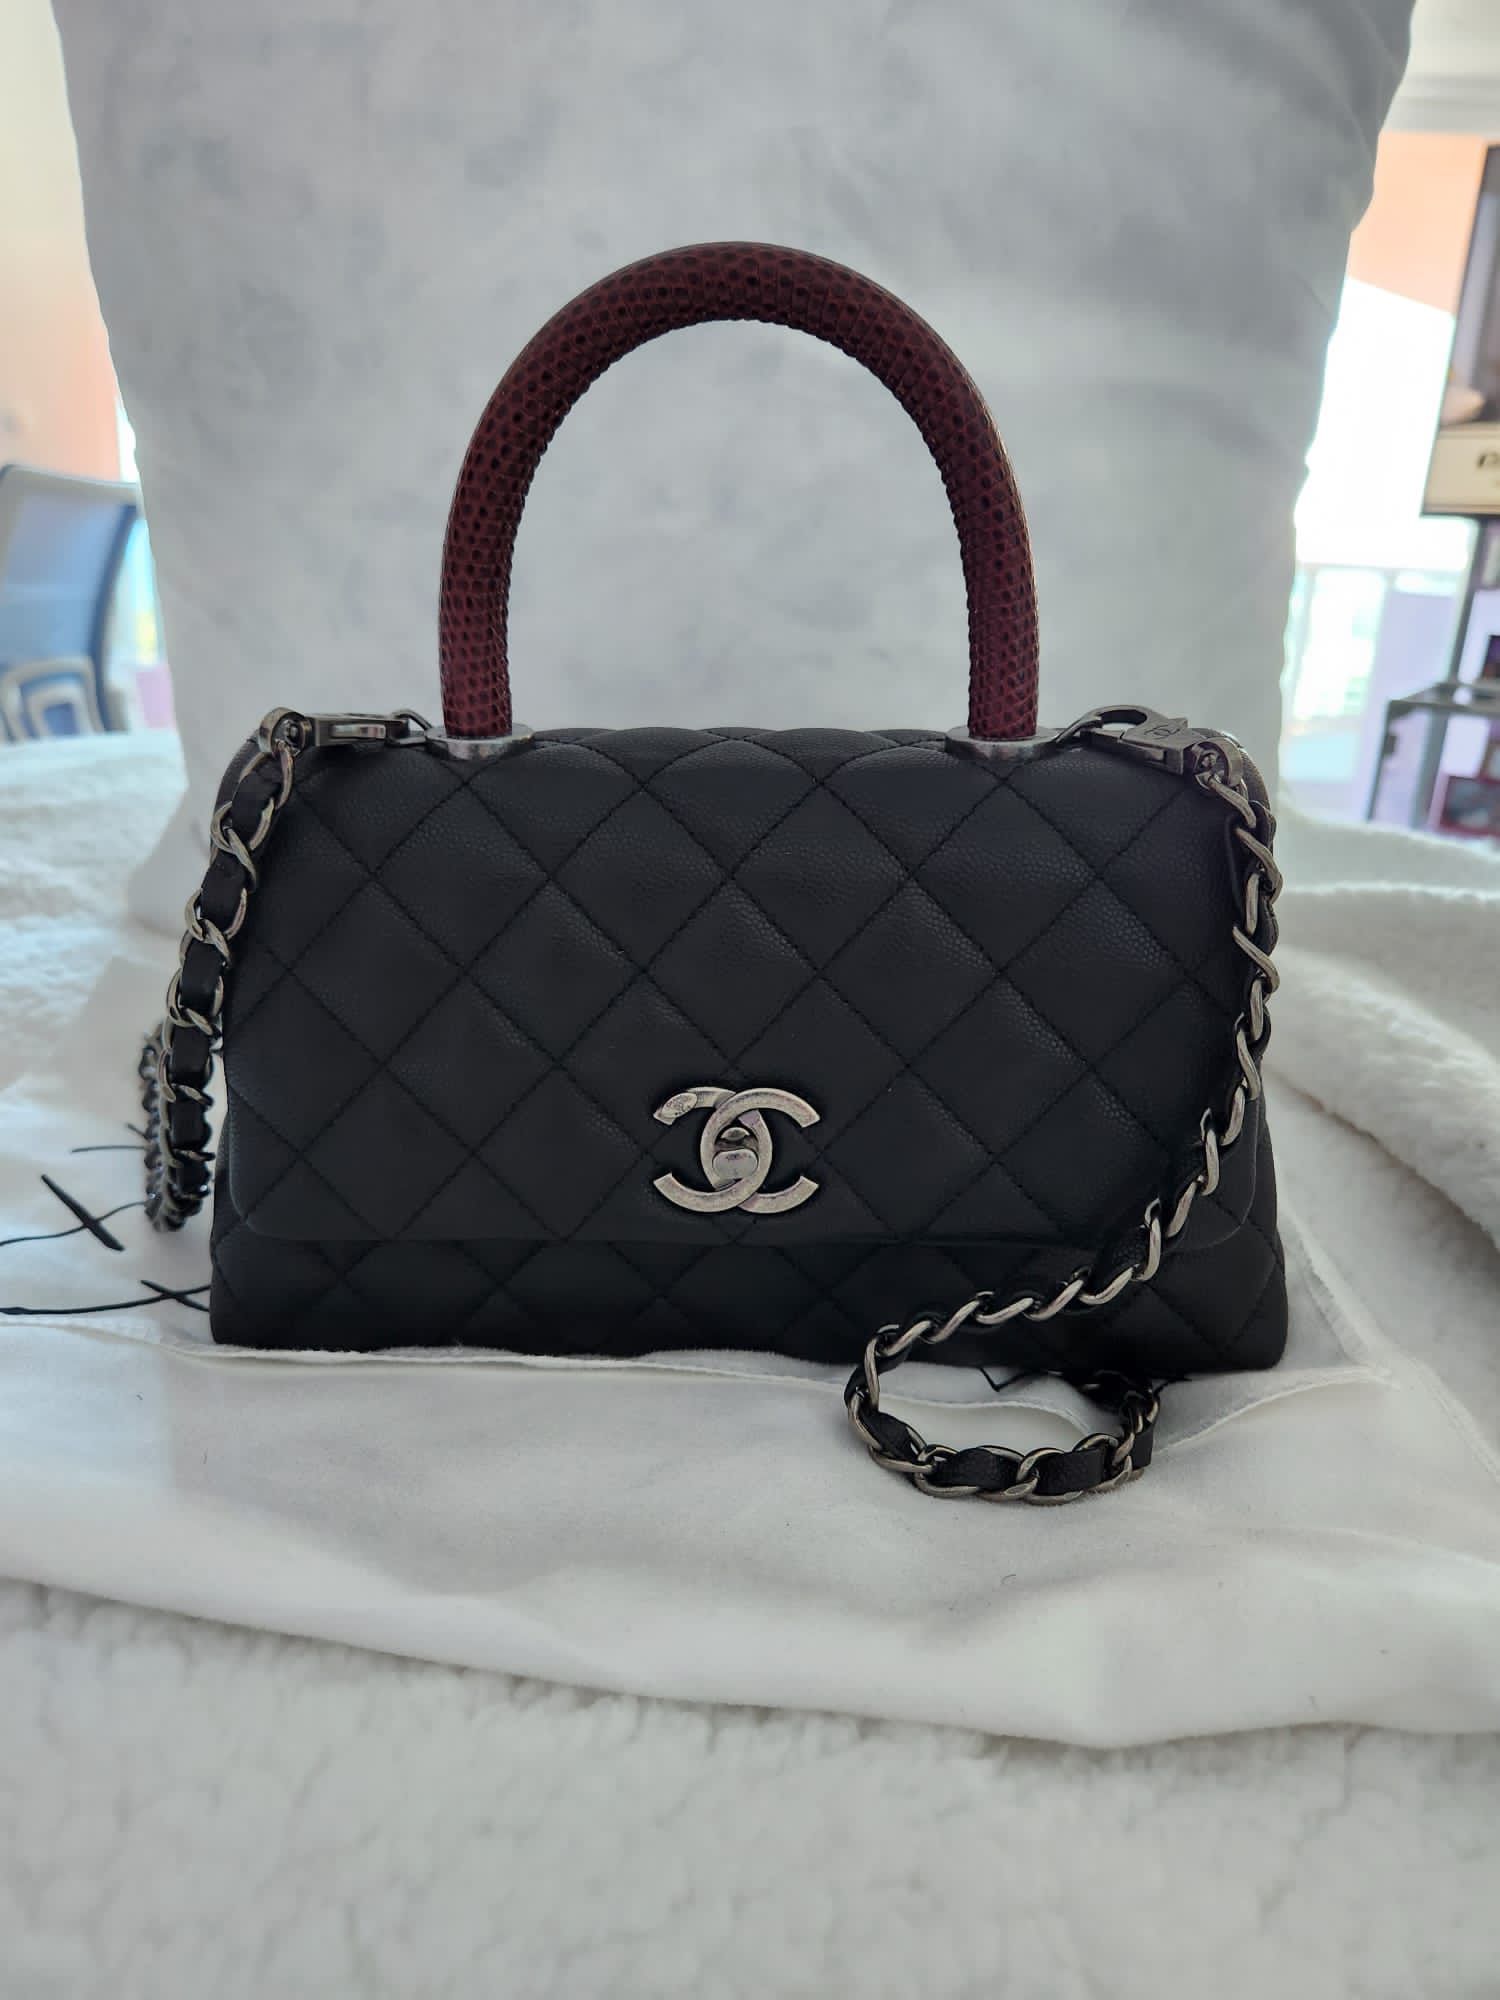 Chanel Mini Coco Handbag for Sale in Aventura, FL - OfferUp